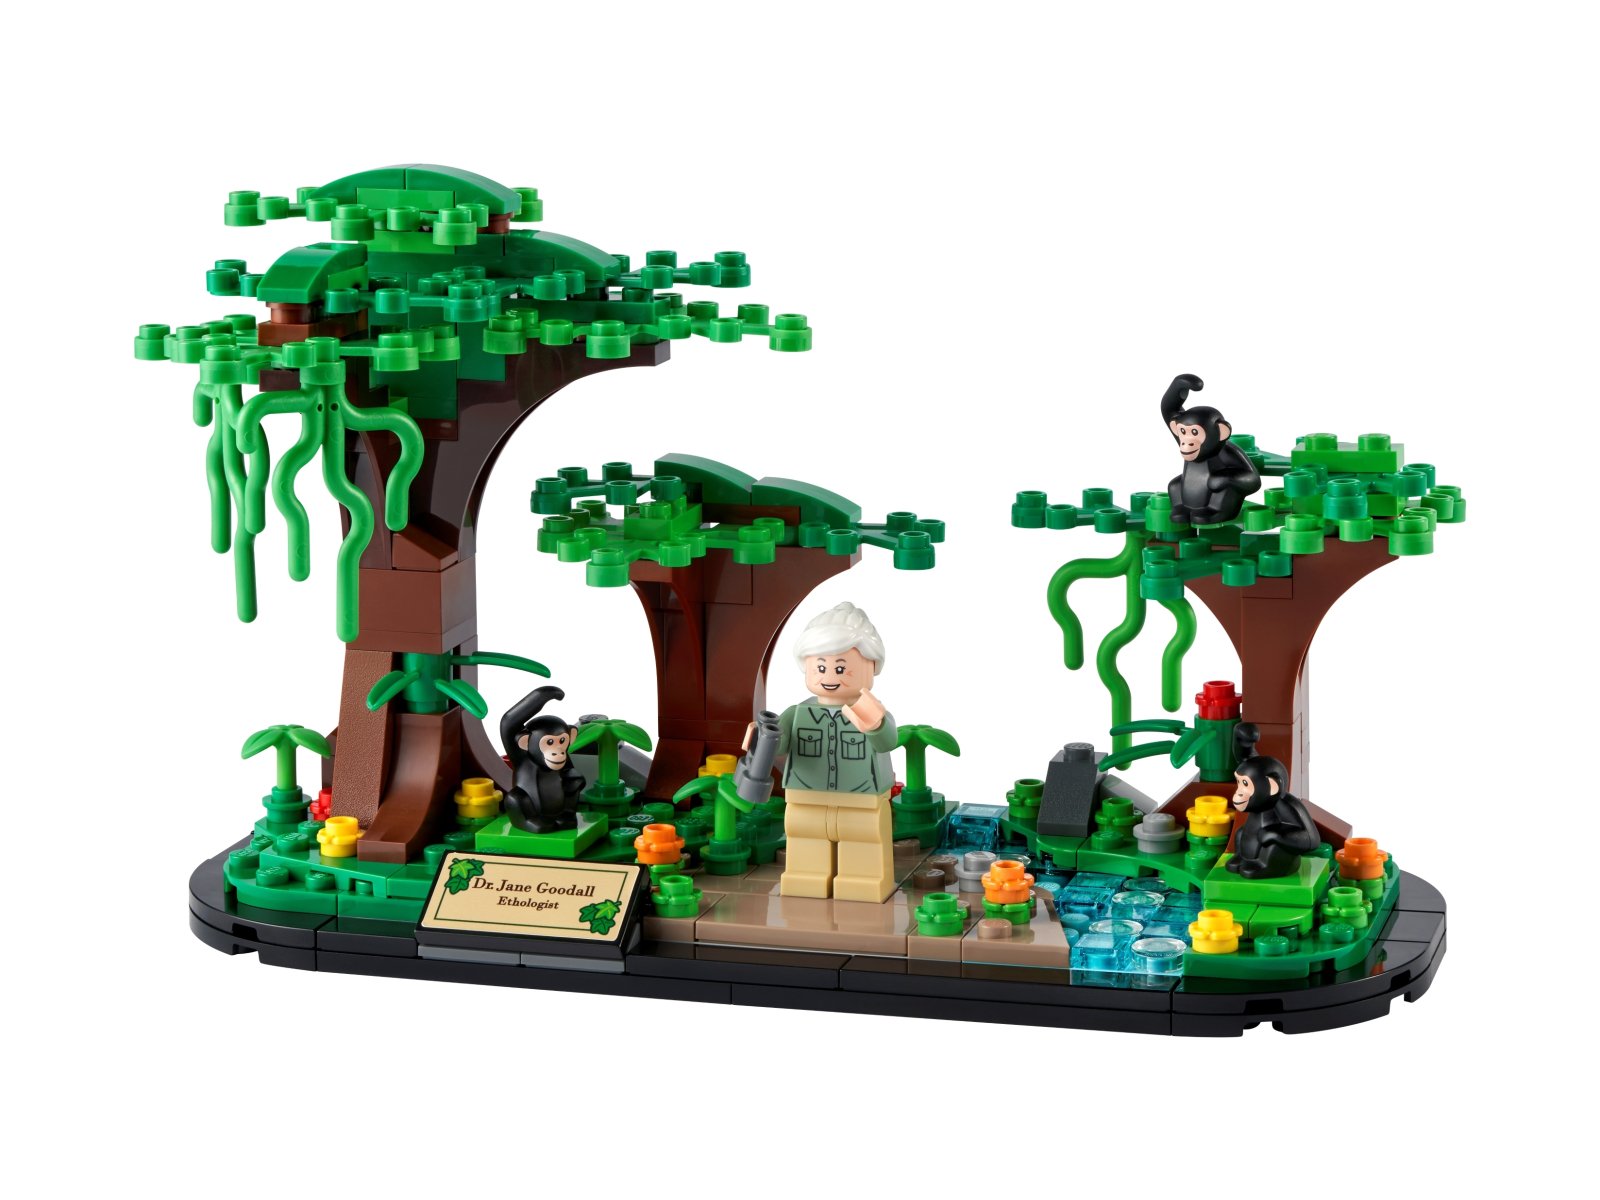 LEGO 40530 Hołd dla Jane Goodall